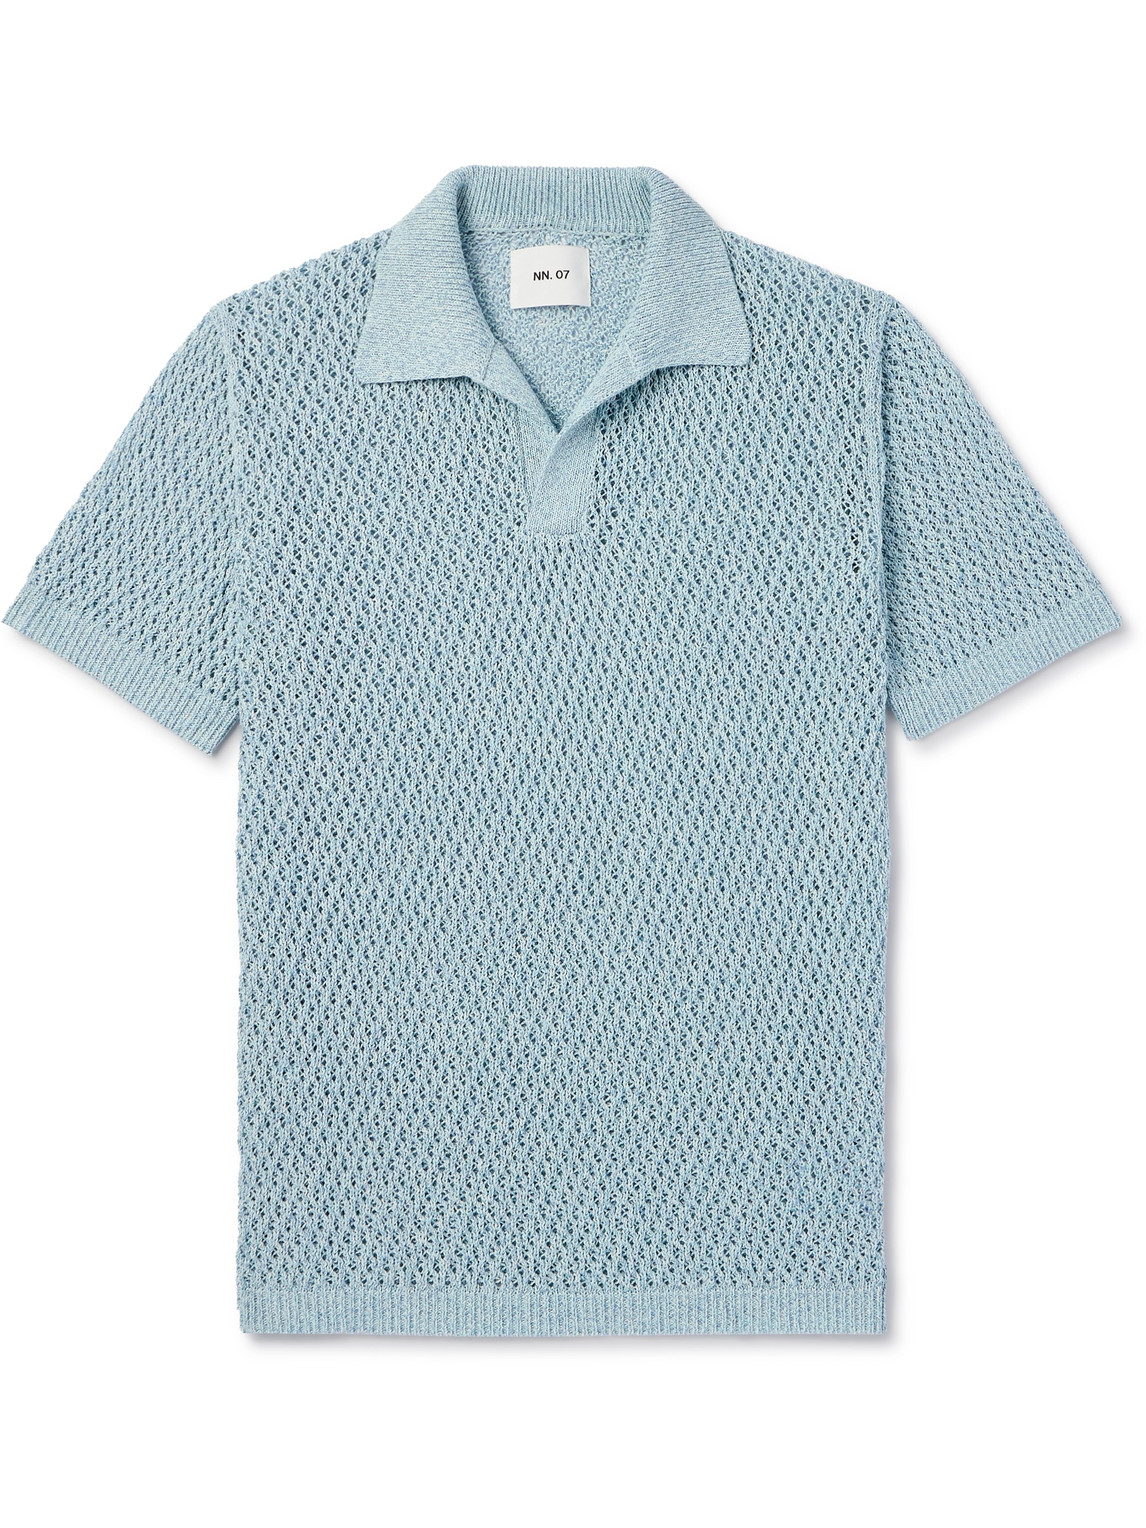 Ryan 6632 Open-Knit Cotton-Blend Polo Shirt